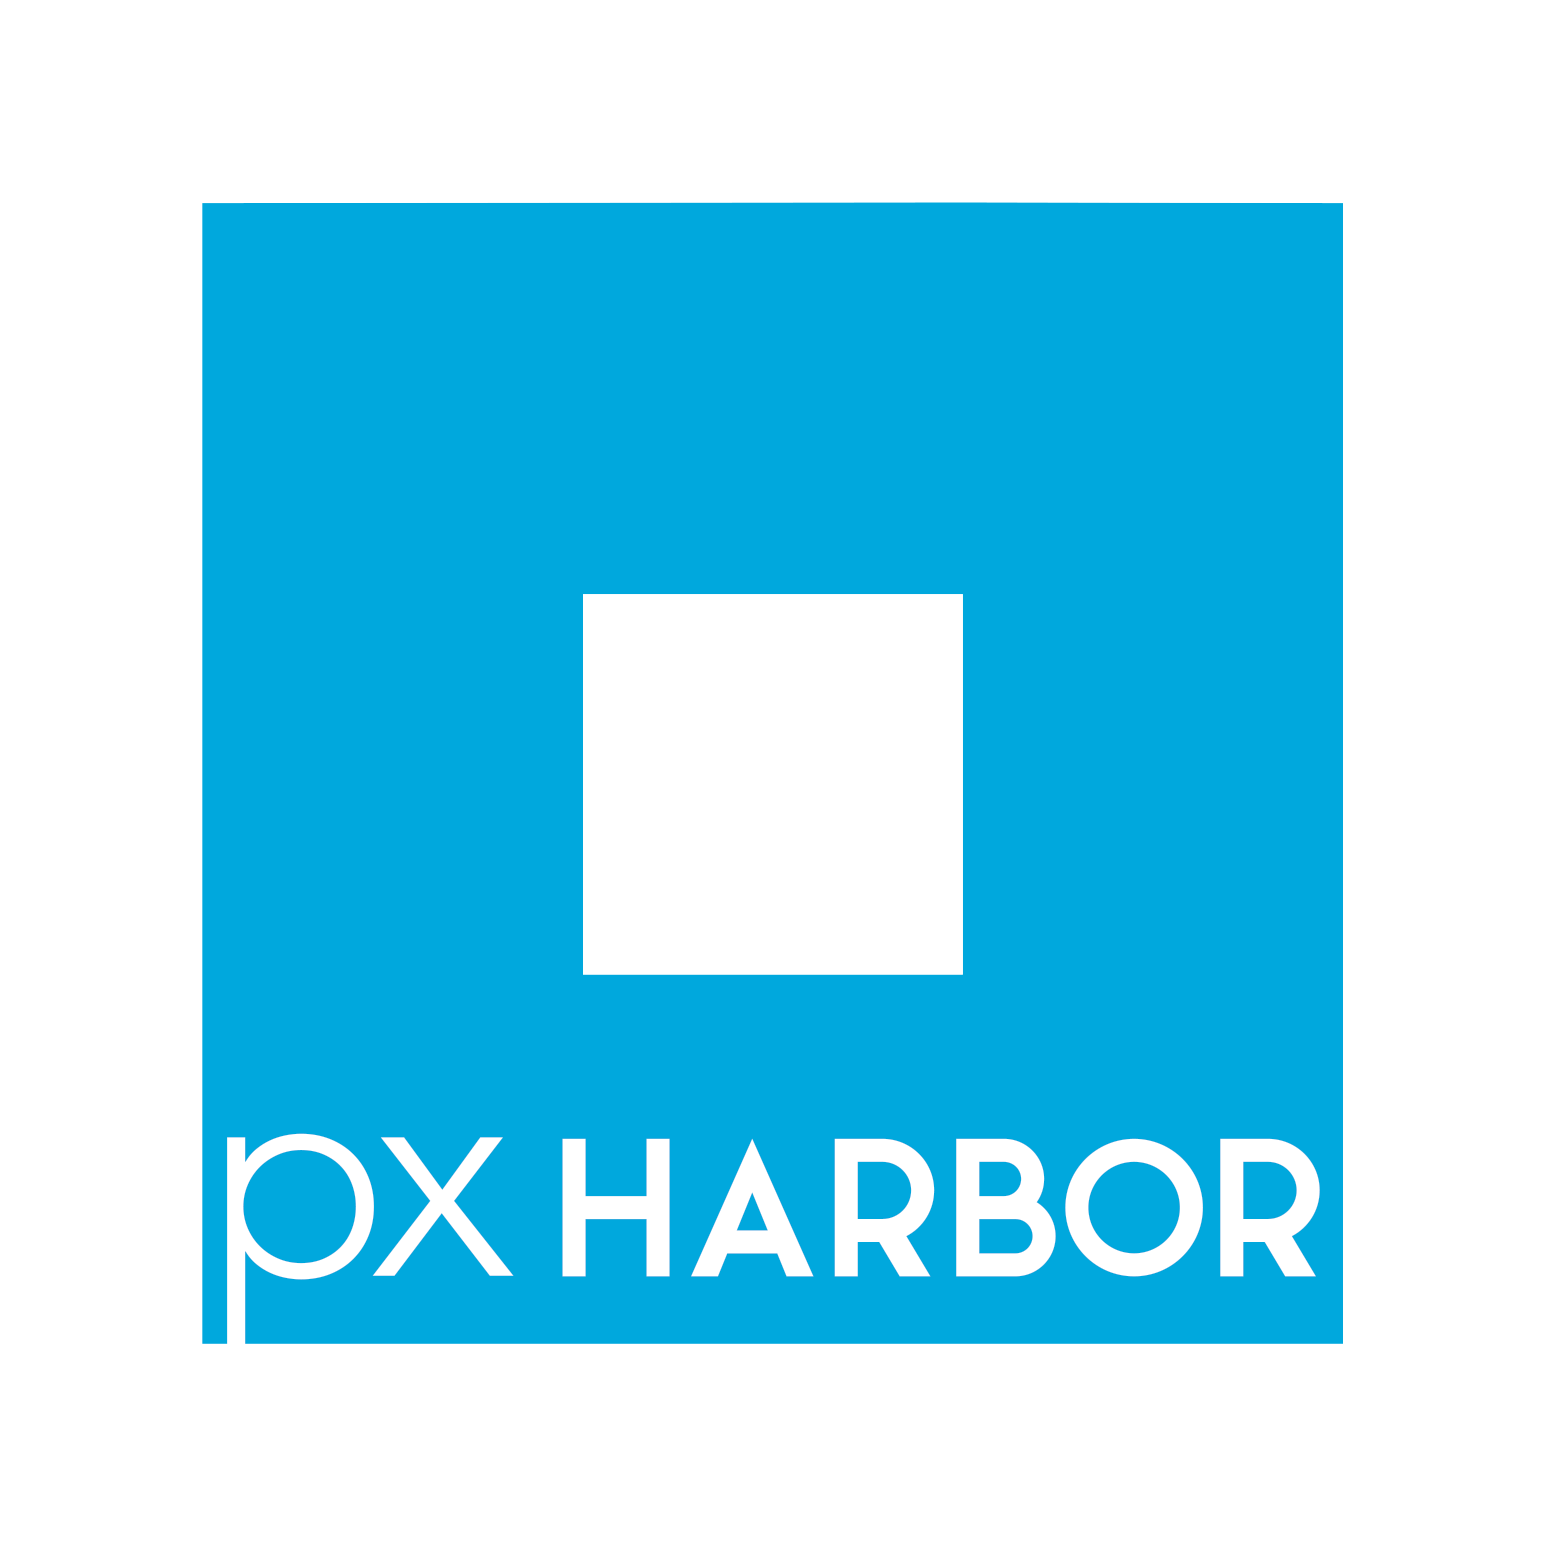 Pixel Harbor